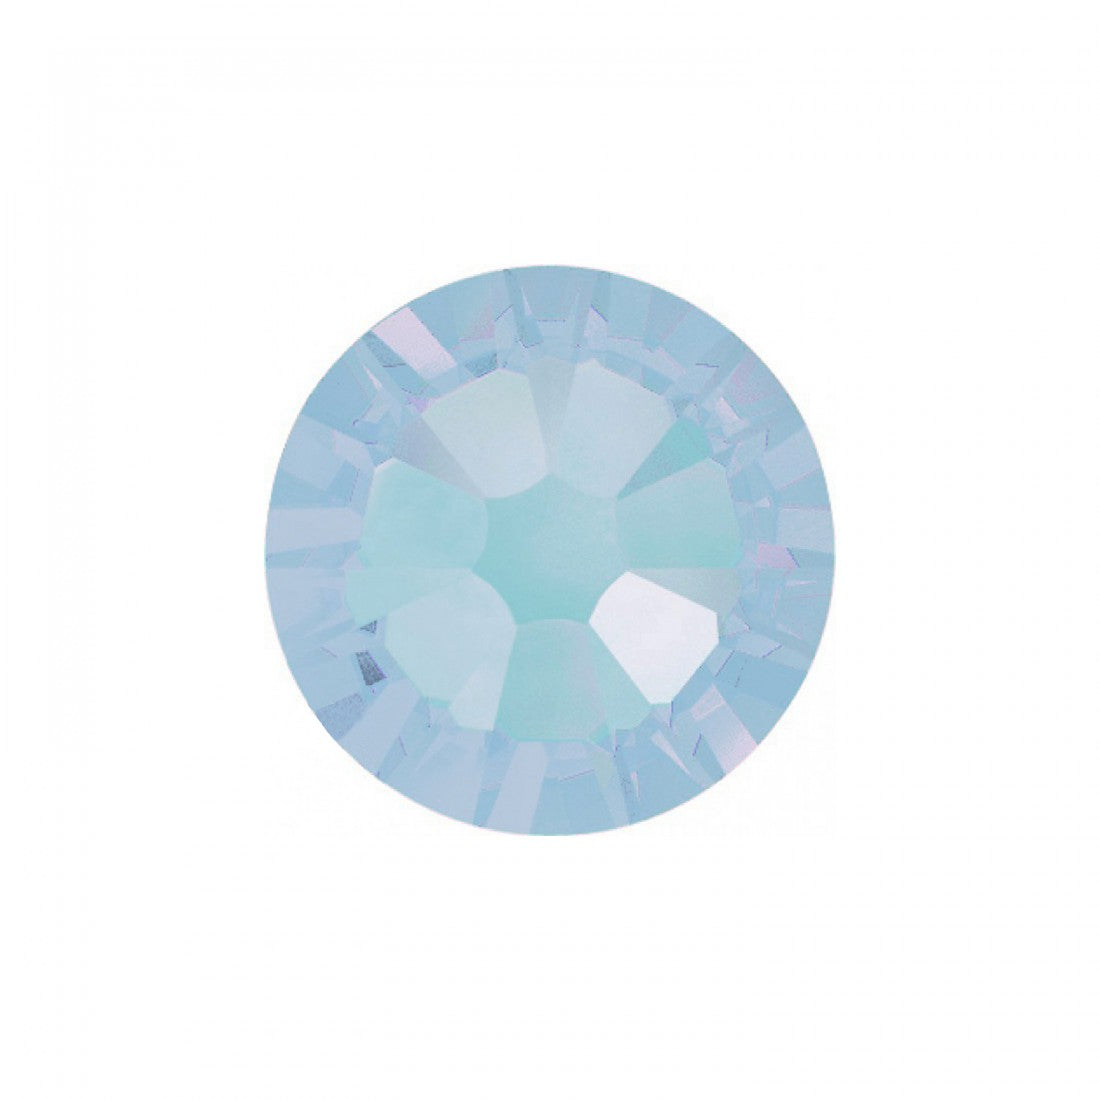 Abstract | Nailart crystal blue jade